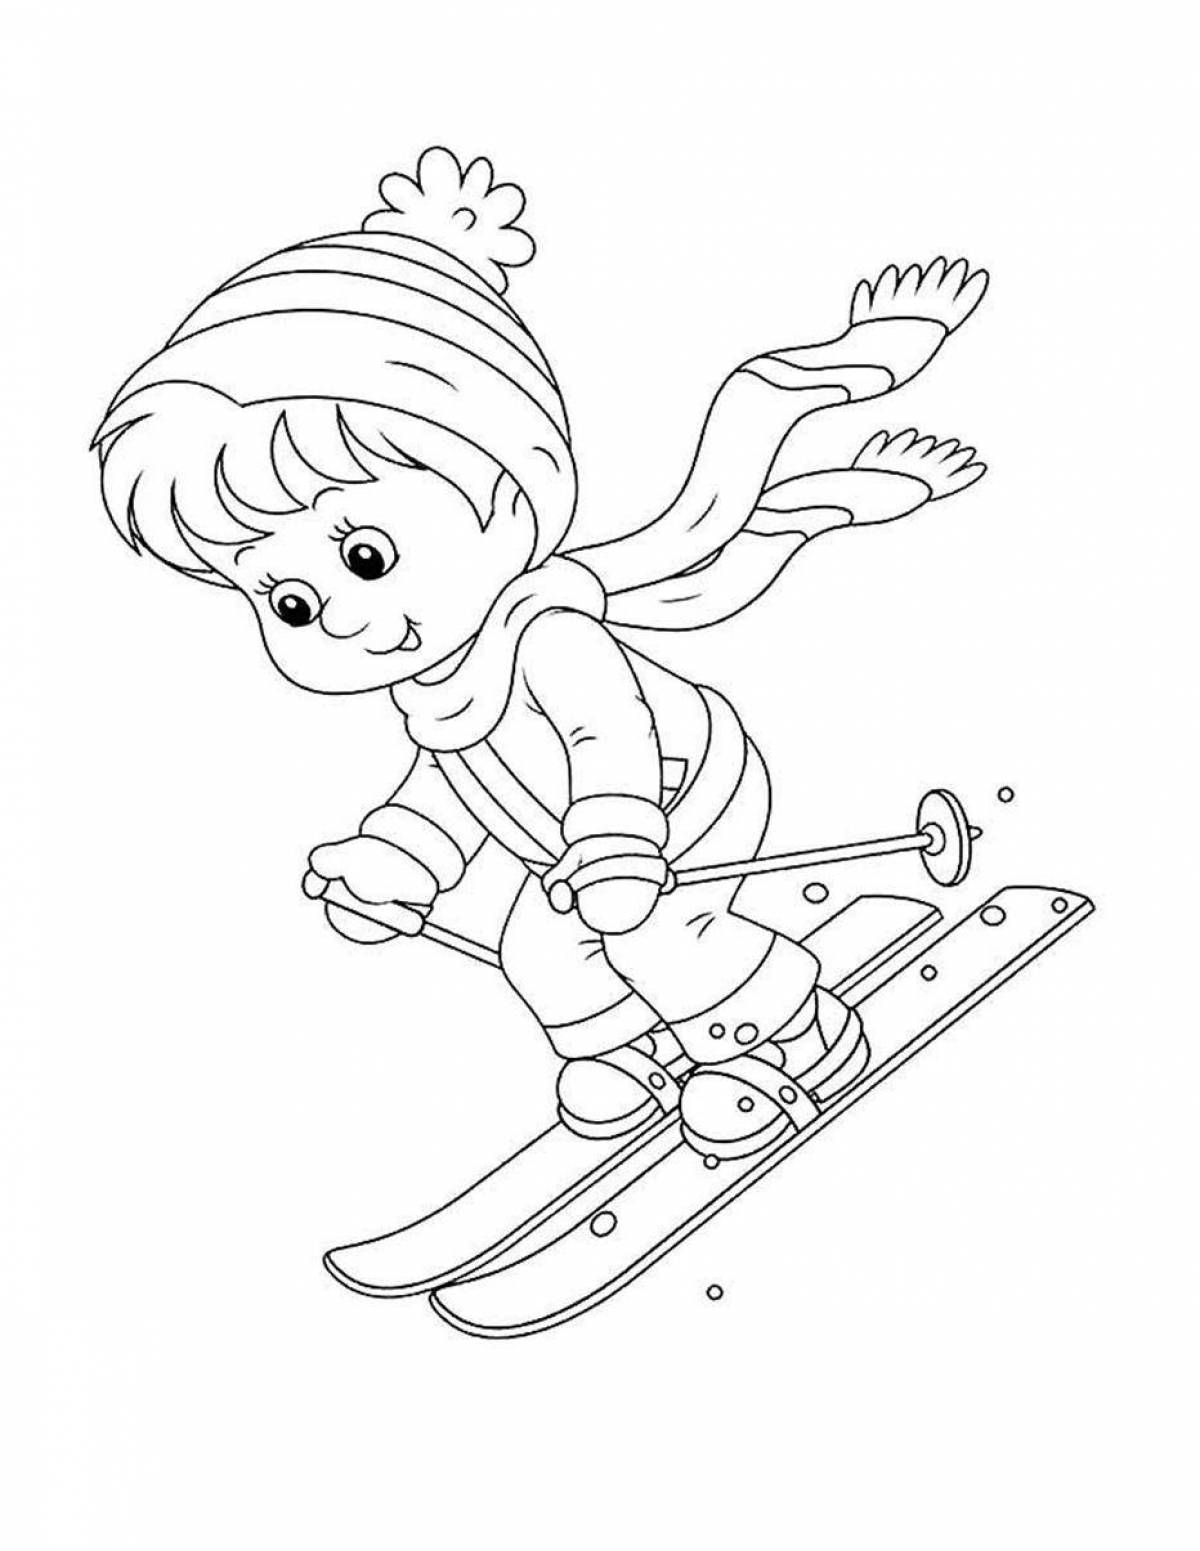 Energetic children skiing in winter